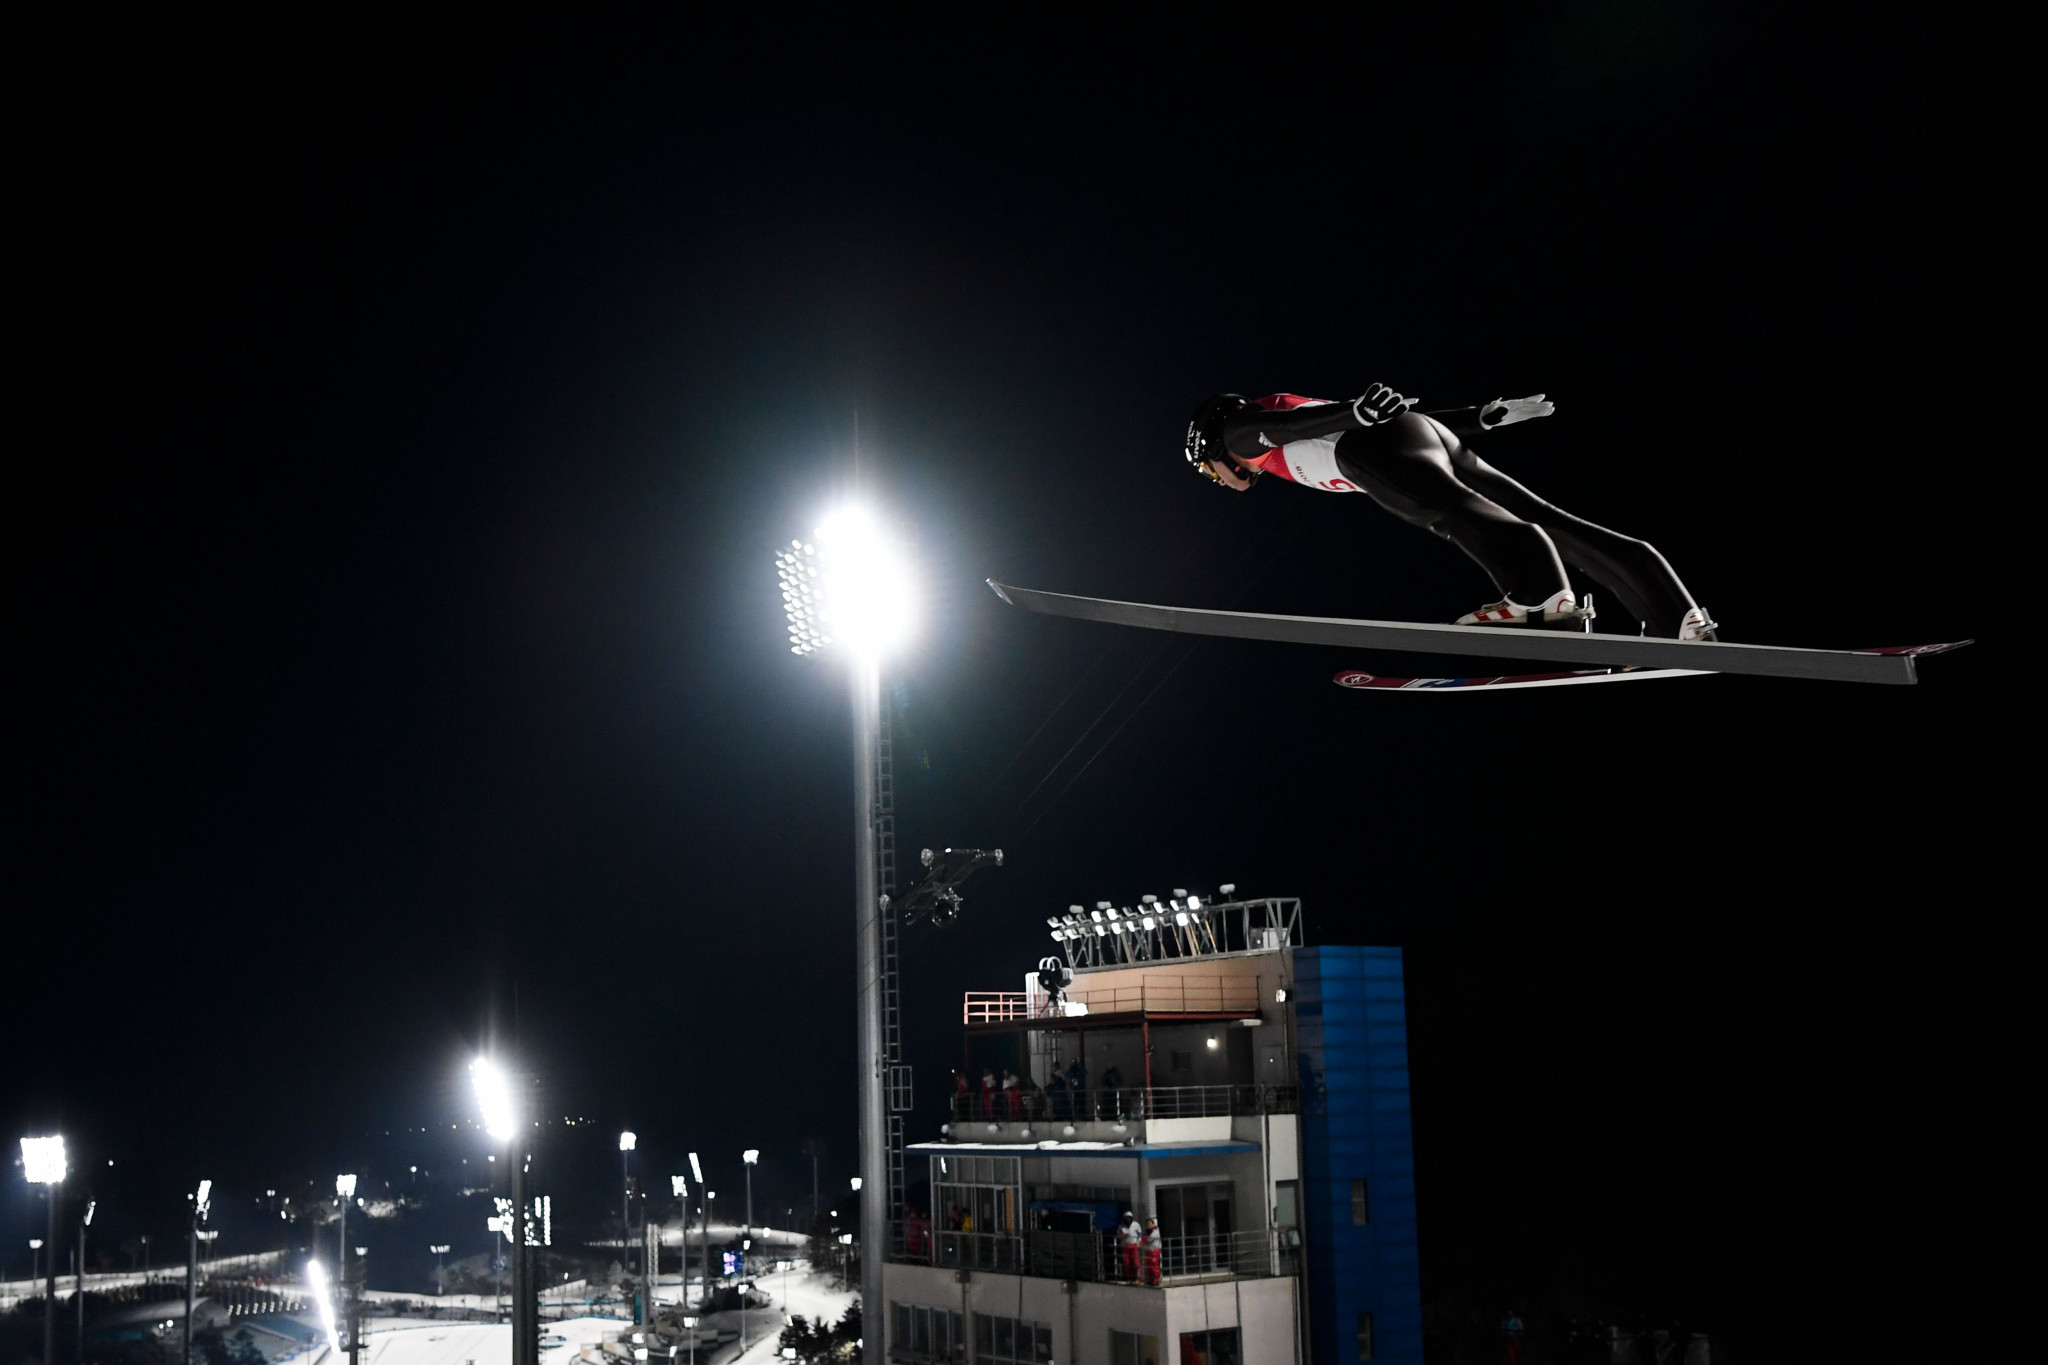 Action begins with curling and ski jumping at Pyeongchang 2018